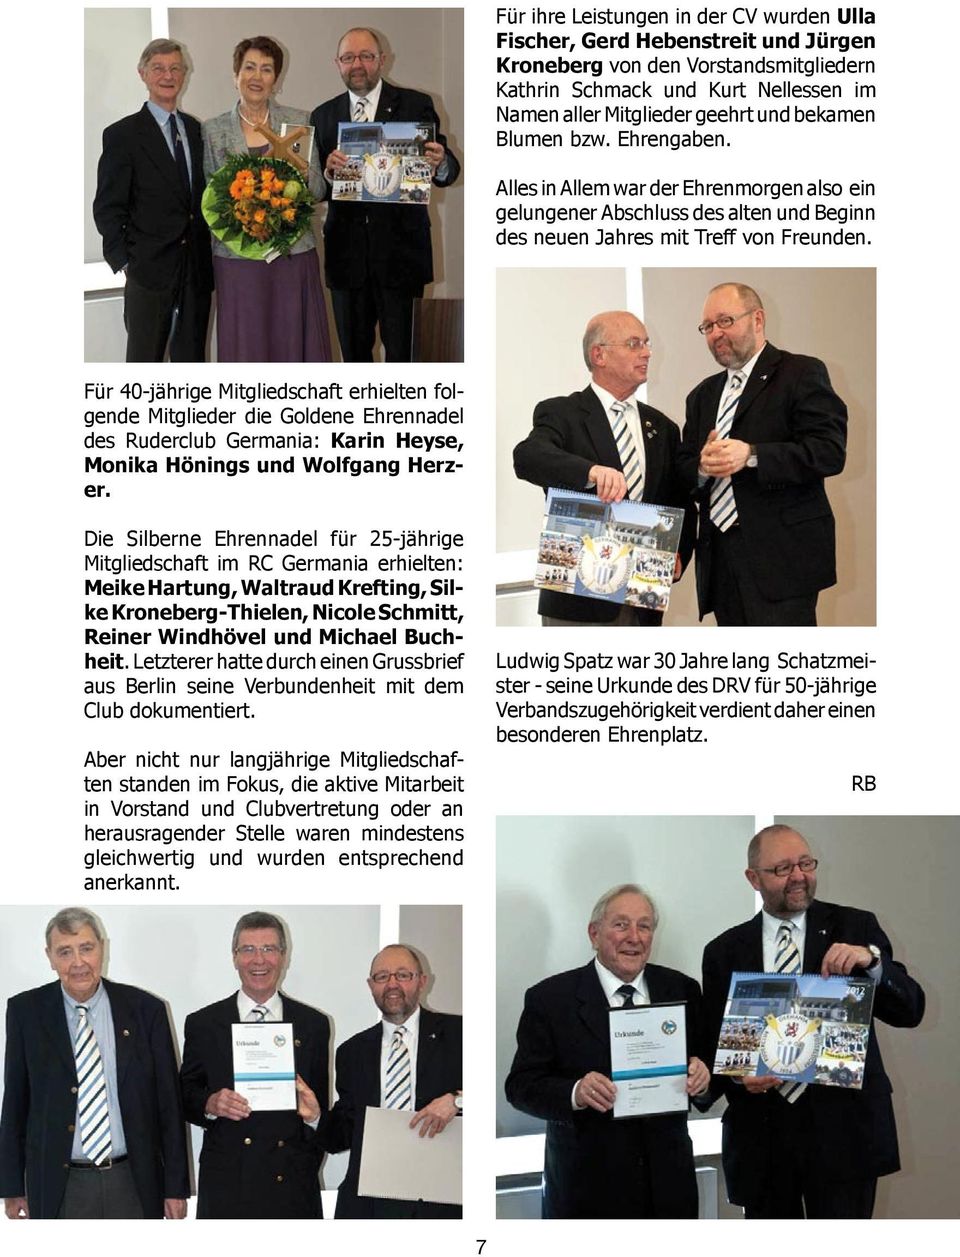 Für 40-jährige Mitgliedschaft erhielten folgende Mitglieder die Goldene Ehrennadel des Ruderclub Germania: Karin Heyse, Monika Hönings und Wolfgang Herzer.